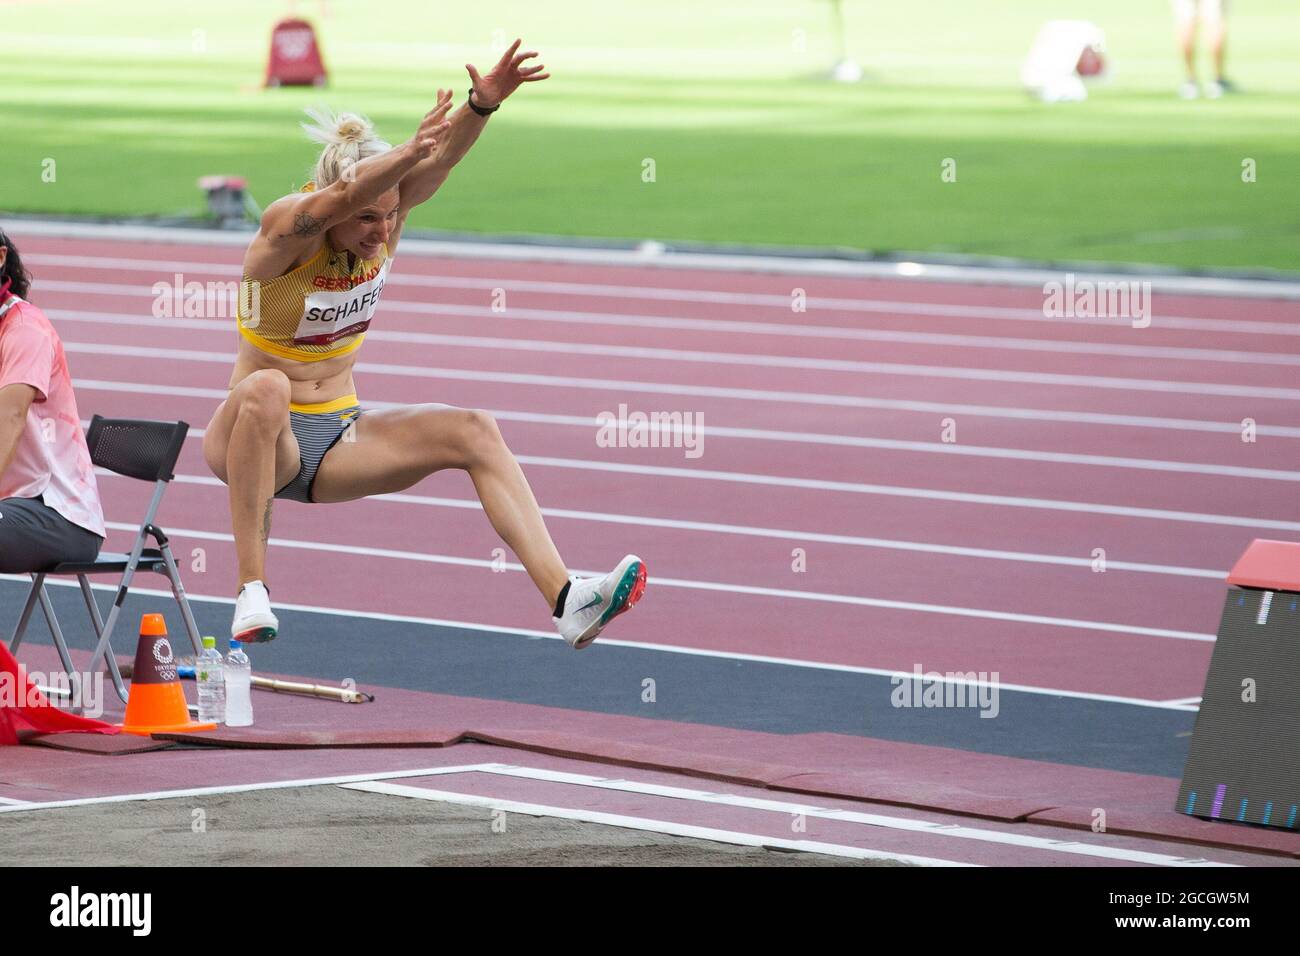 05. August 2021: Carolin Schafer (2133) aus Deutschland startet beim Frauen-Heptathlon-Long-Jump-Event während des Leichtathletik-Wettbewerbs im Olympiastadion in Tokio, Japan. Daniel Lea/CSM} Stockfoto